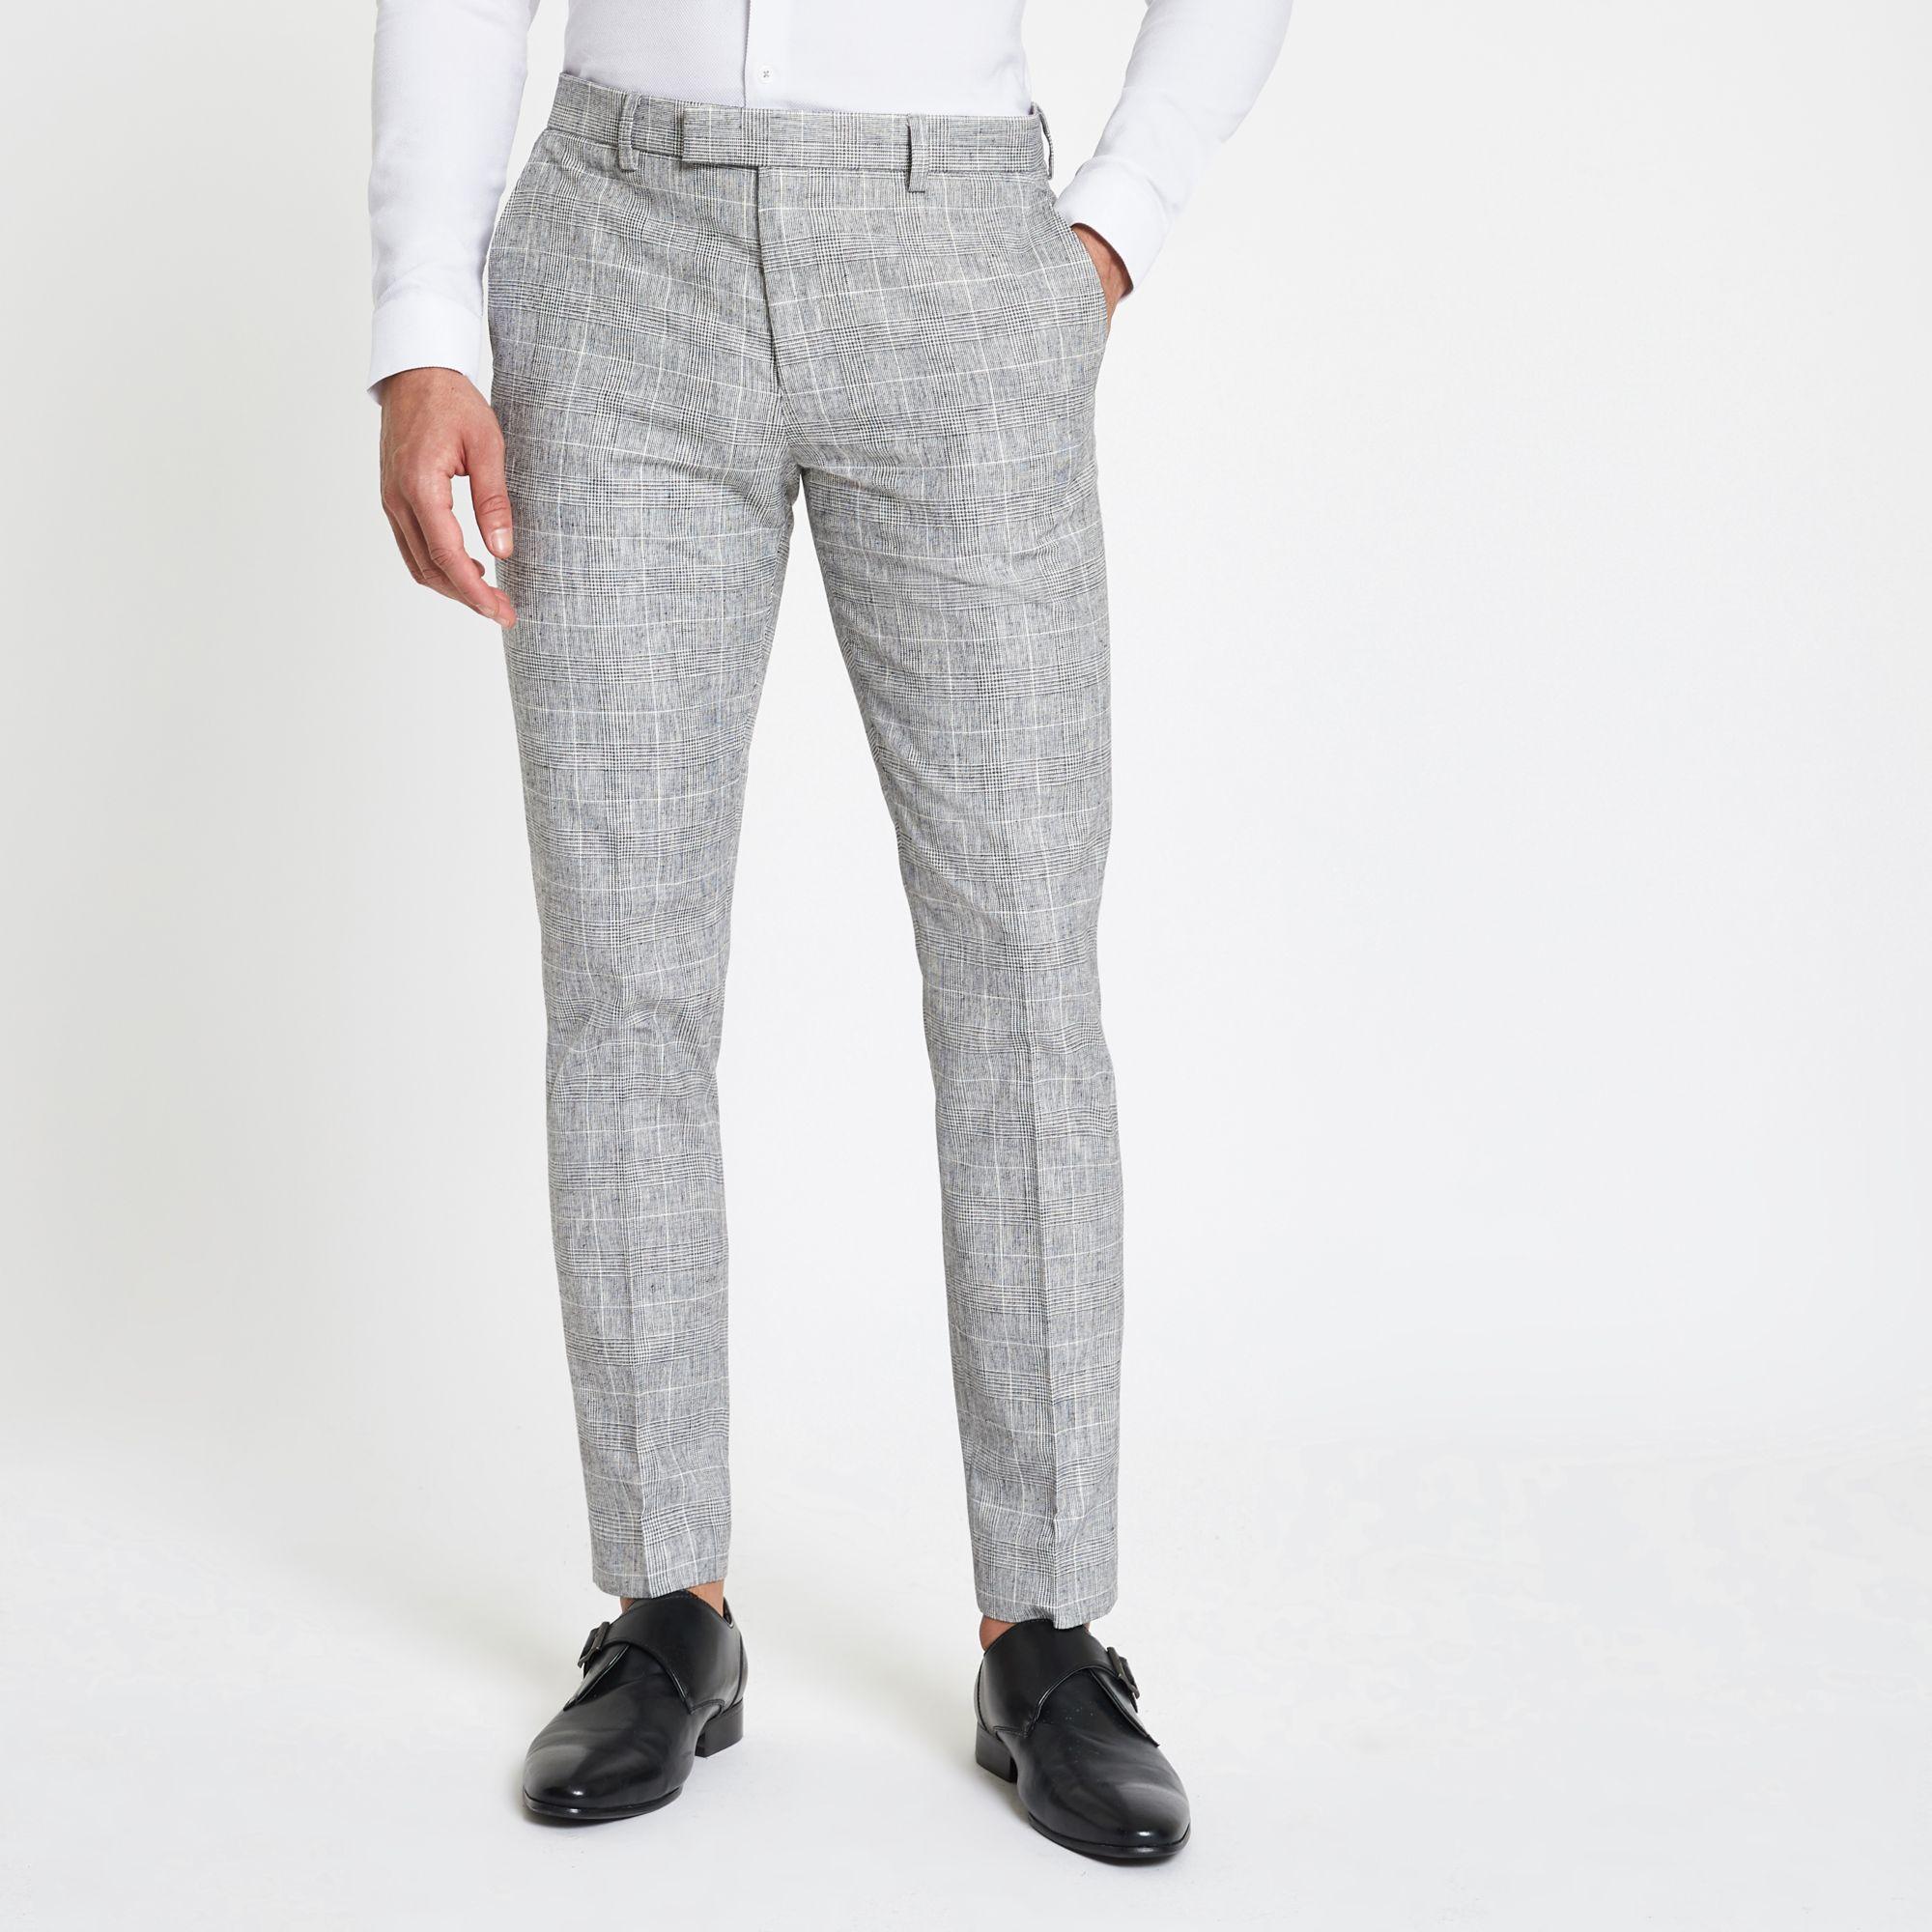 Nove  Grey Check  Slim Stretch Suit Pants  Suit Pants  Politix